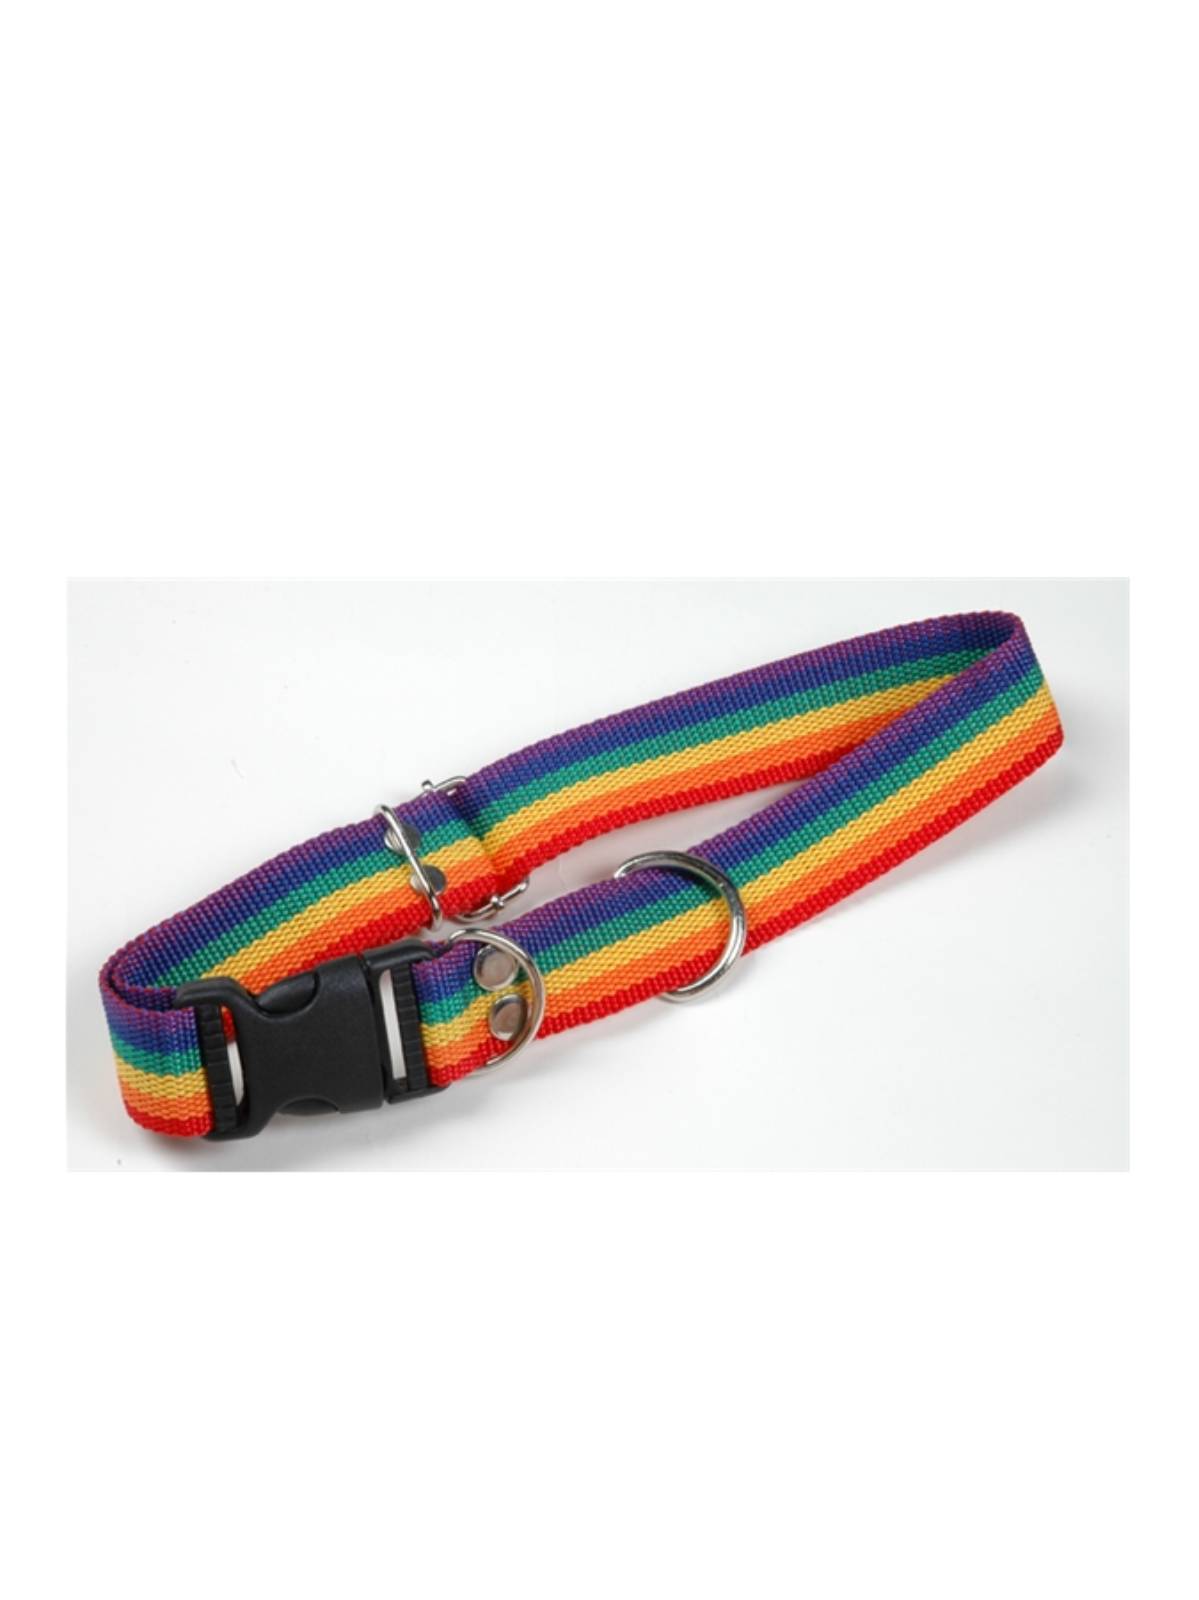 Regenbogen Hundehalsband groß